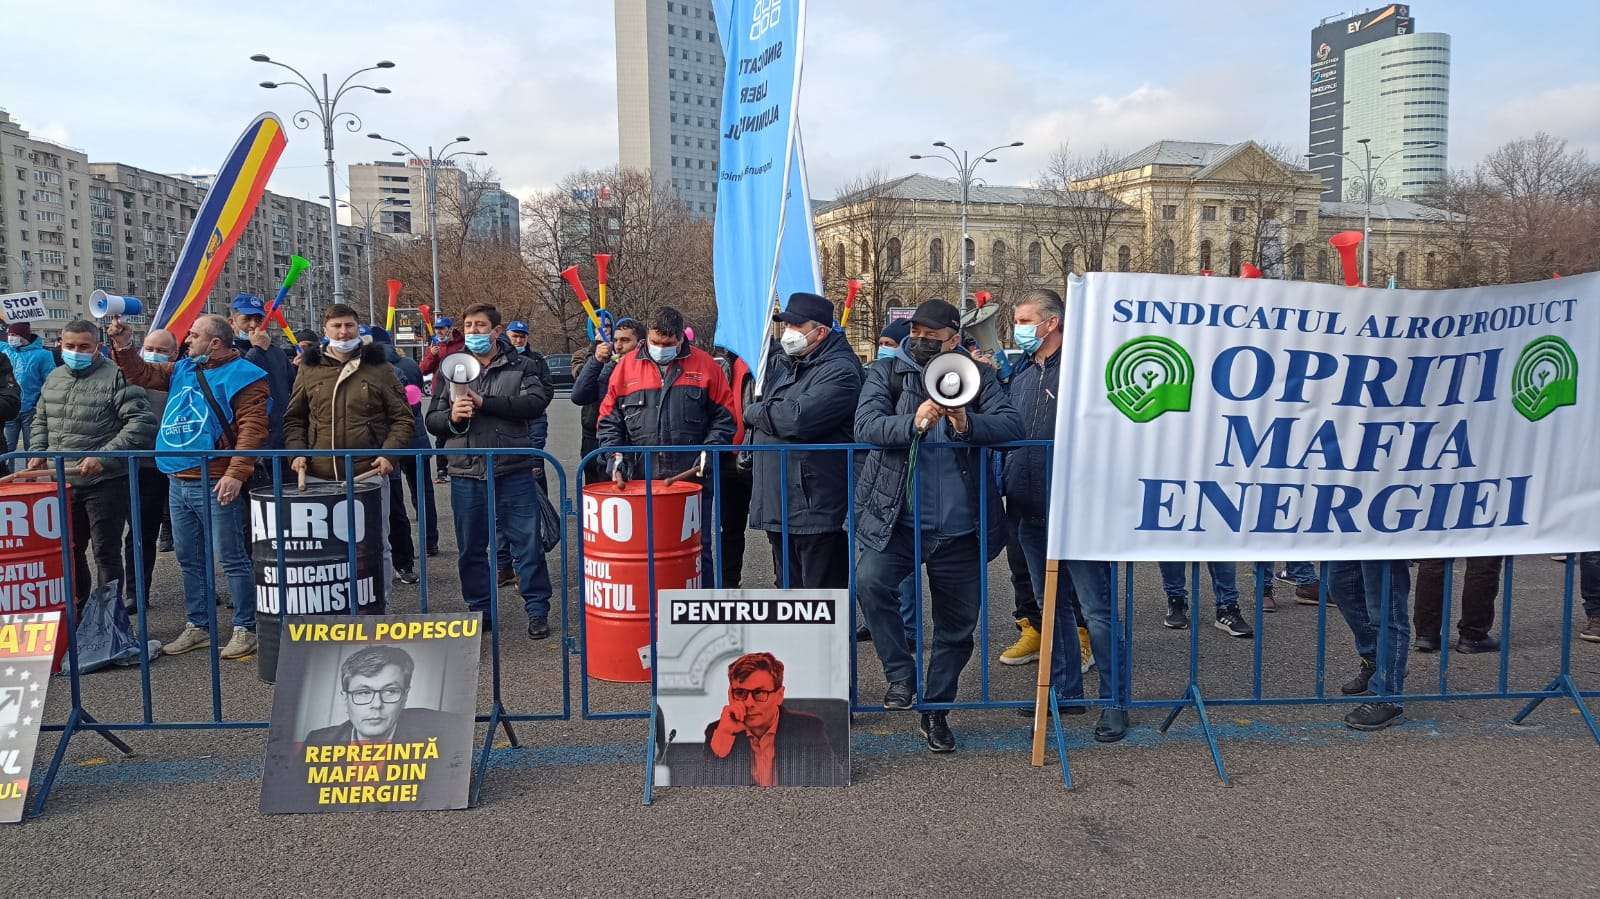 Protest în faţa Ministerului Energiei! Printre protestatari sunt și angajați din cadrul Oțelinox Târgoviște și Donalam Târgoviște